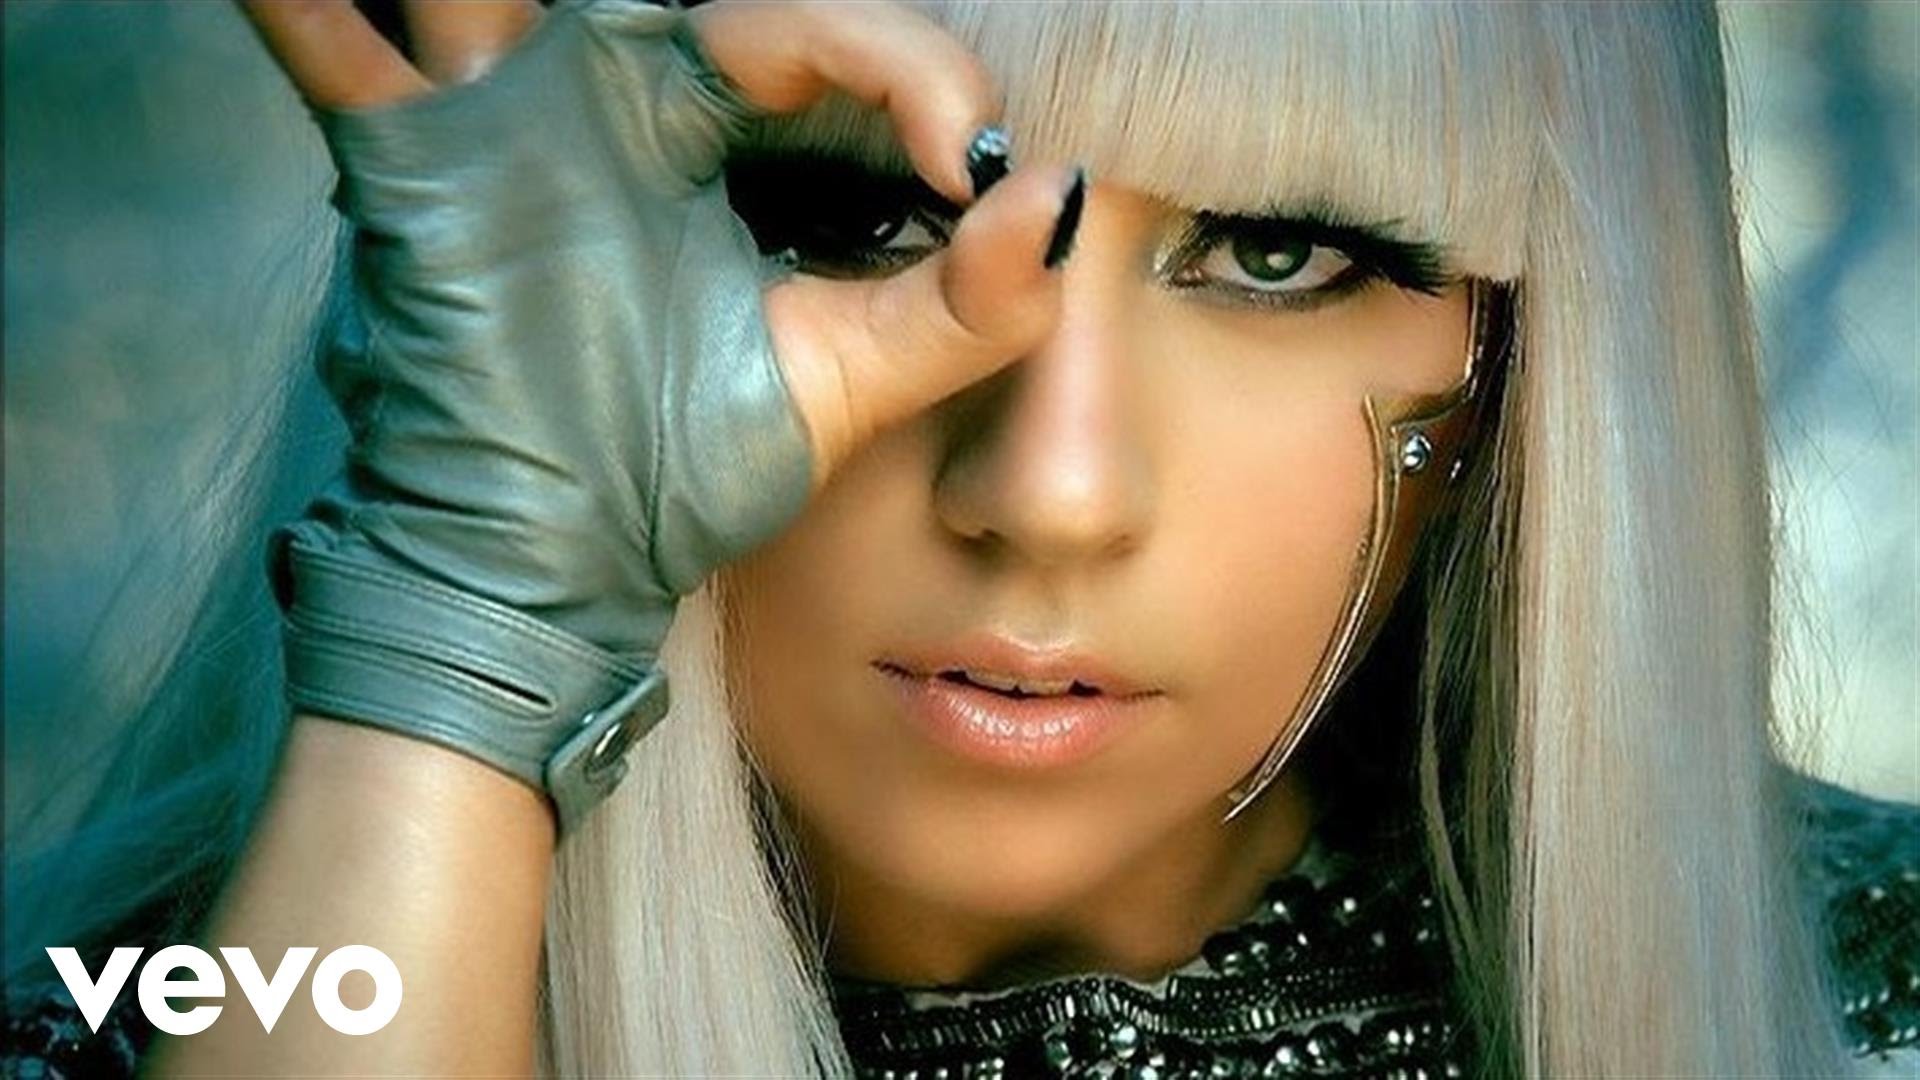 Lady Gaga - Poker Face - YouTube